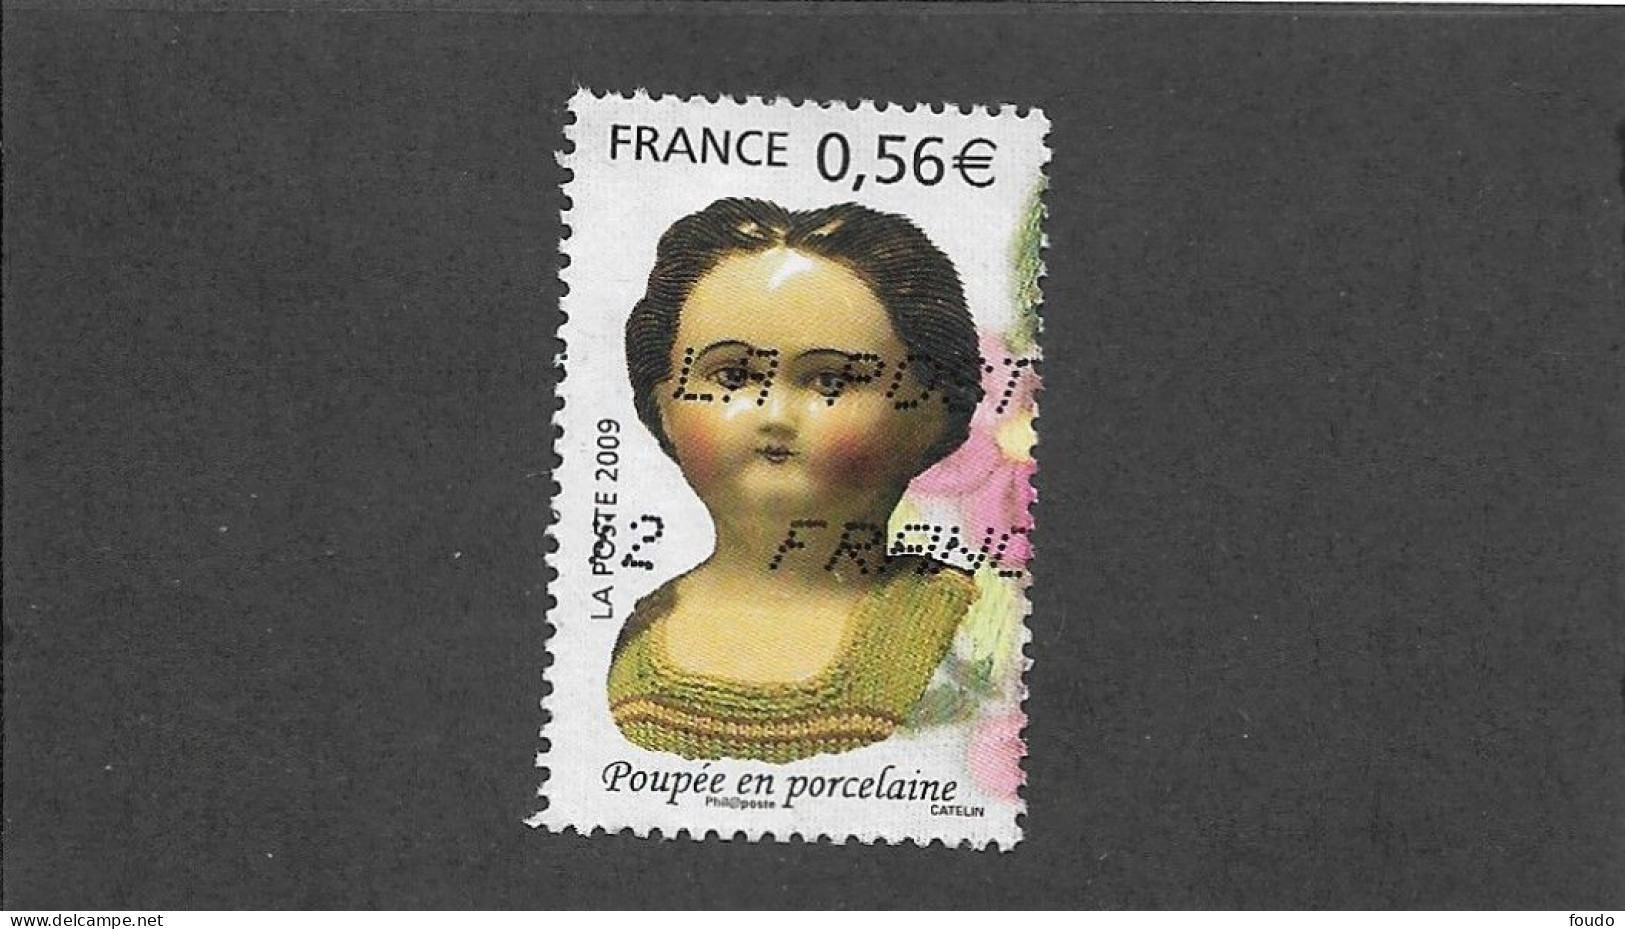 FRANCE 2009 -  N°YT 4394 - Oblitérés